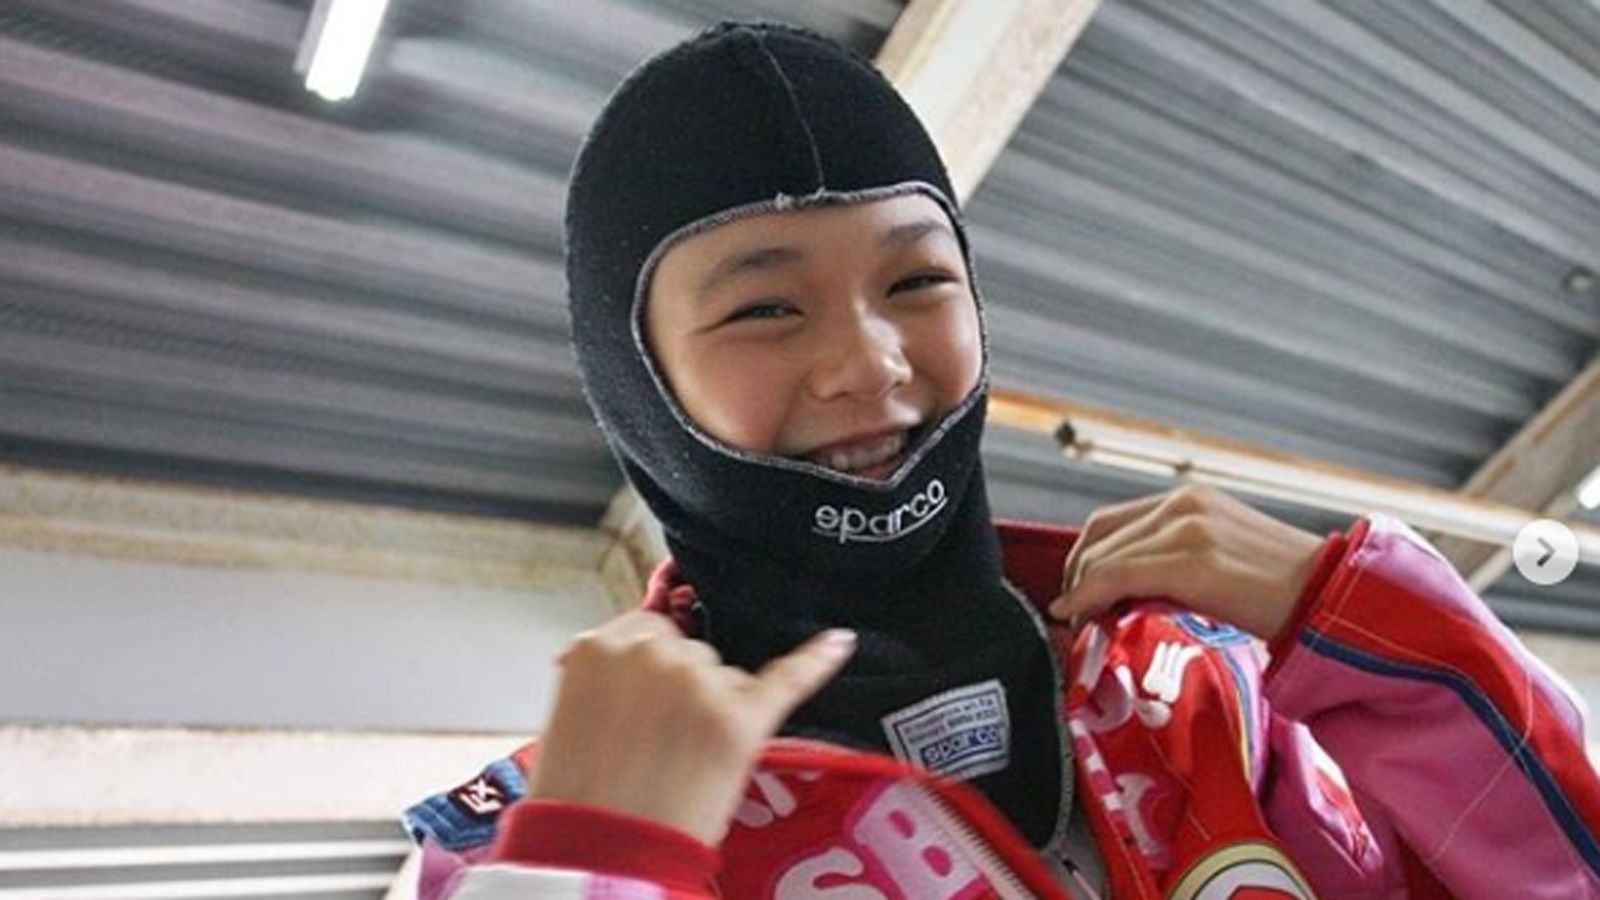 
                <strong>Juju Noda   </strong><br>
                Auch ein Mädchen hat es in unsere Galerie-geschafft. Juju Noda ist die Tochter von Hideki Noda, der in der Formel 1 drei Rennen fuhr. Die Chancen stehen gut, dass Juju eines Tages mehr Grand Prix bestreiten wird - und möglicherweise auch gewinnt. Die 14-jährige Japanerin gilt als Ausnahmetalent. Ihr Ziel: Sie möchte die erste Formel-1-Weltmeisterin werden. Bereits im Alter von neun Jahren fuhr sie Tests im Formel-4-Auto. Aktuell ist sie in der dänischen Formel 4 unterwegs und gewann das Auftaktrennen. In Japan wird sie bereits als Star gefeiert.
              